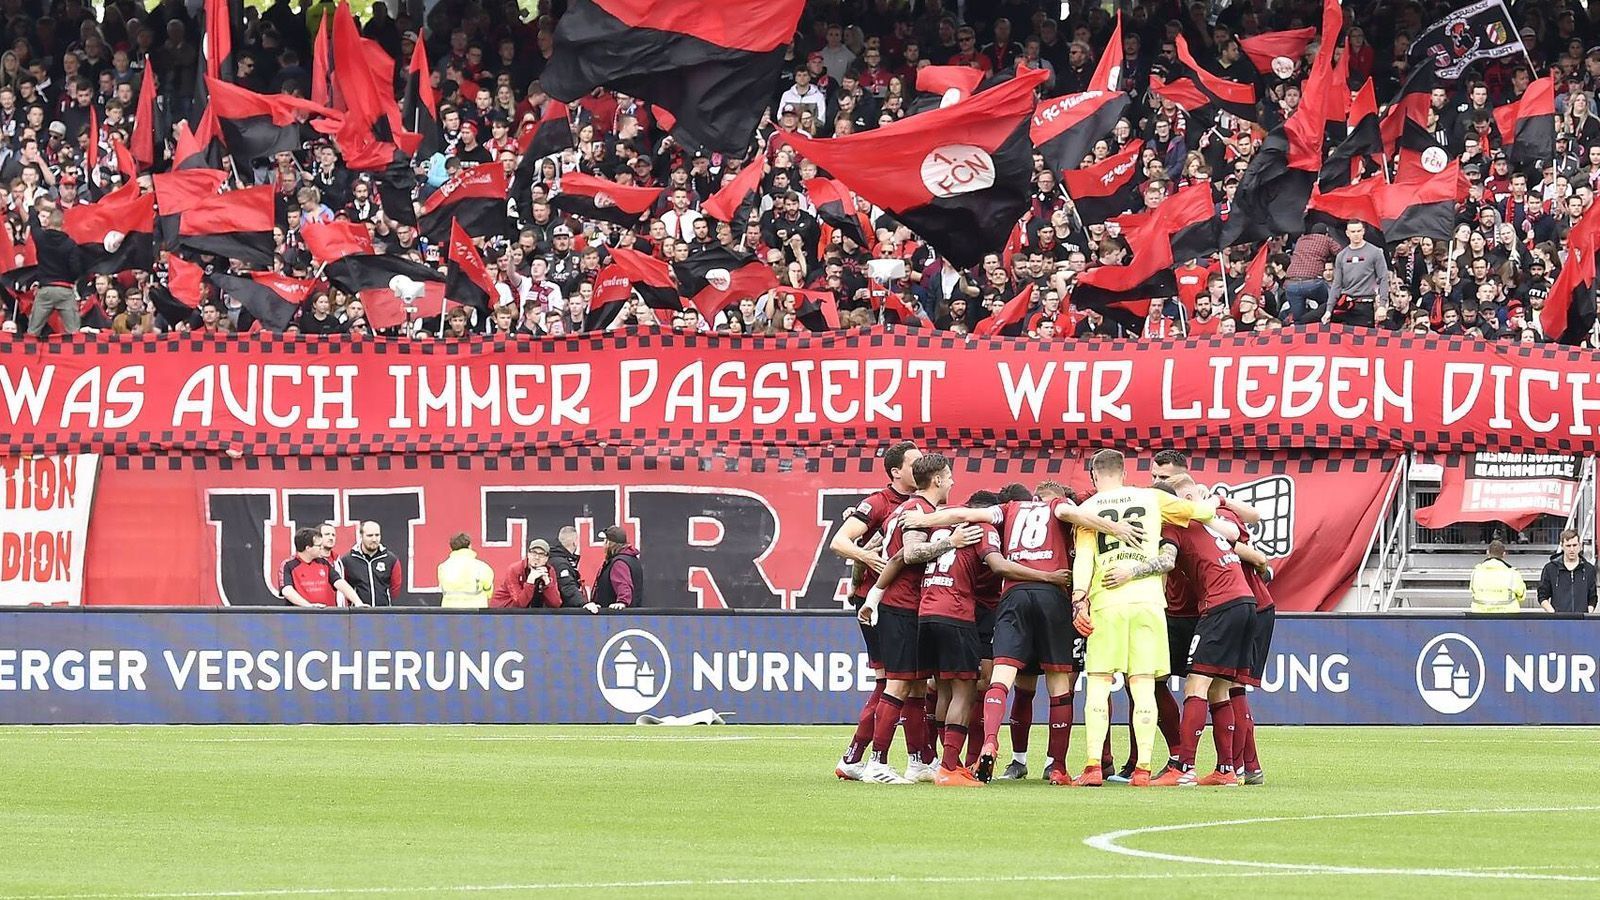 
                <strong>Platz 10: 1. FC Nürnberg</strong><br>
                Der 1. FC Nürnberg spielte in der Saison 2018/2019 an zehn von 34 Spieltagen in einem ausverkauften Stadion.
              